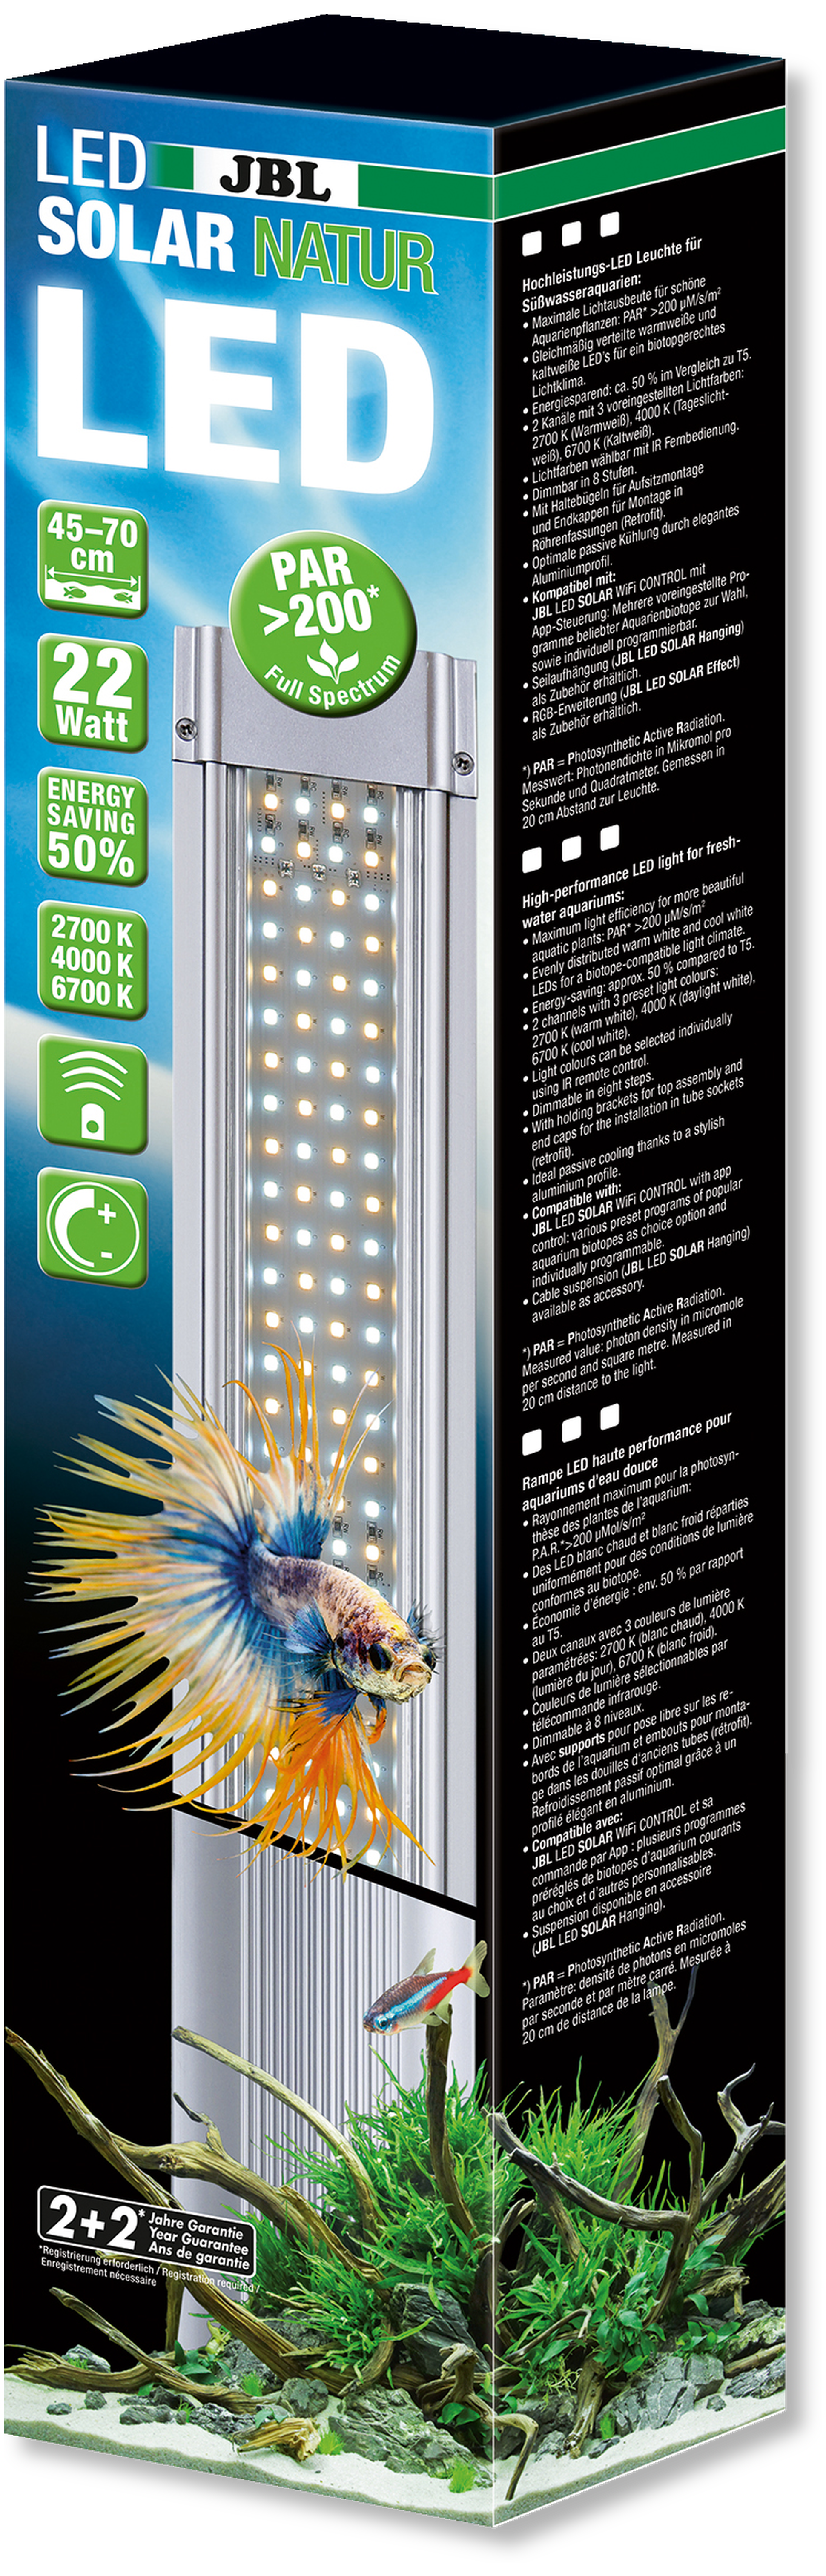 Verlichting Verbetering Jongleren Verlichting: JBL LED Solar Natur 37 watt, 75-100cm